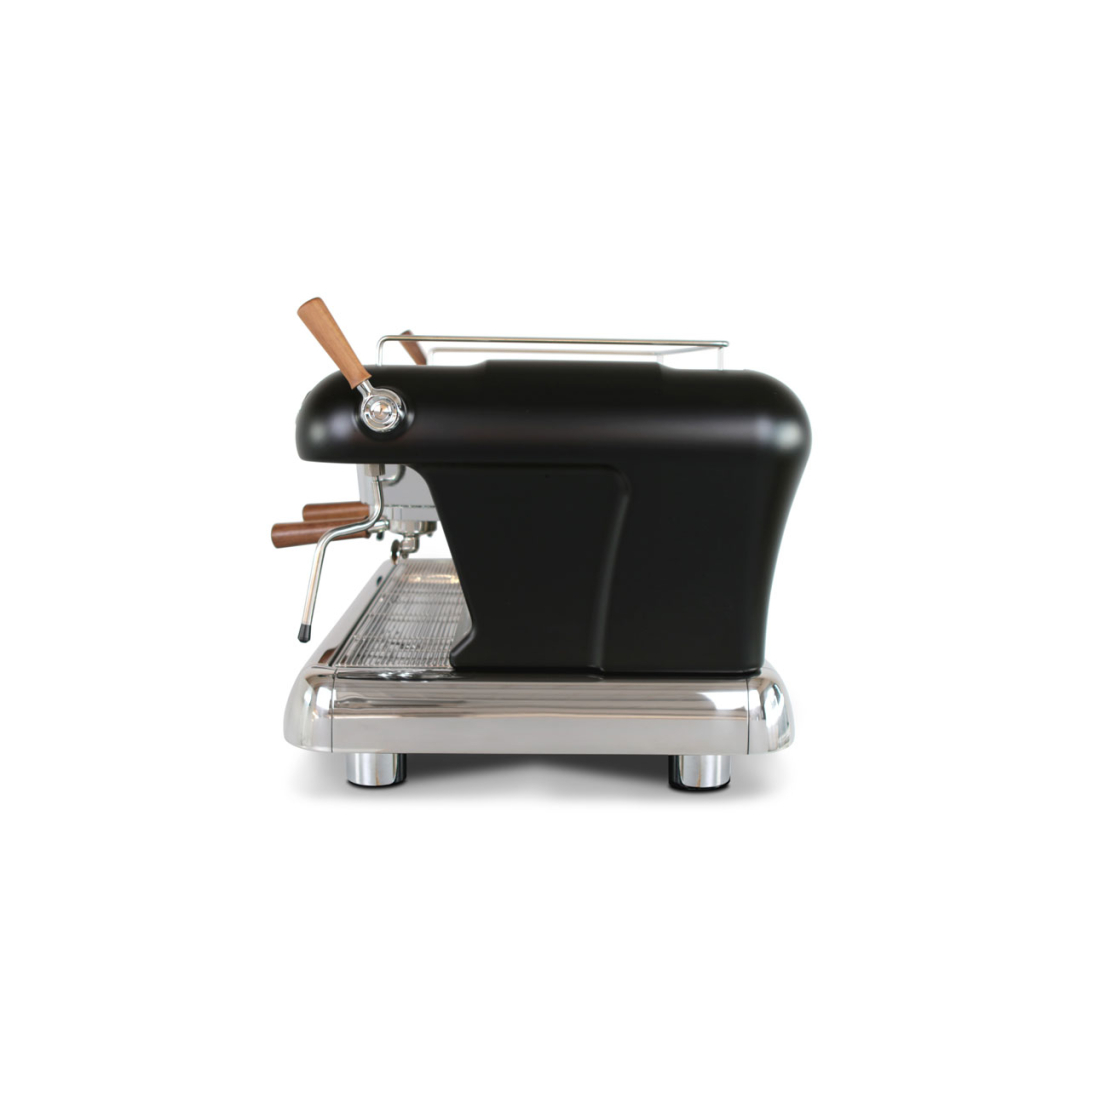 ماكينة قهوة بيج دريم تي 2 جروب اسود ,BD.200, من أسكاسو|mkayn|مكاين